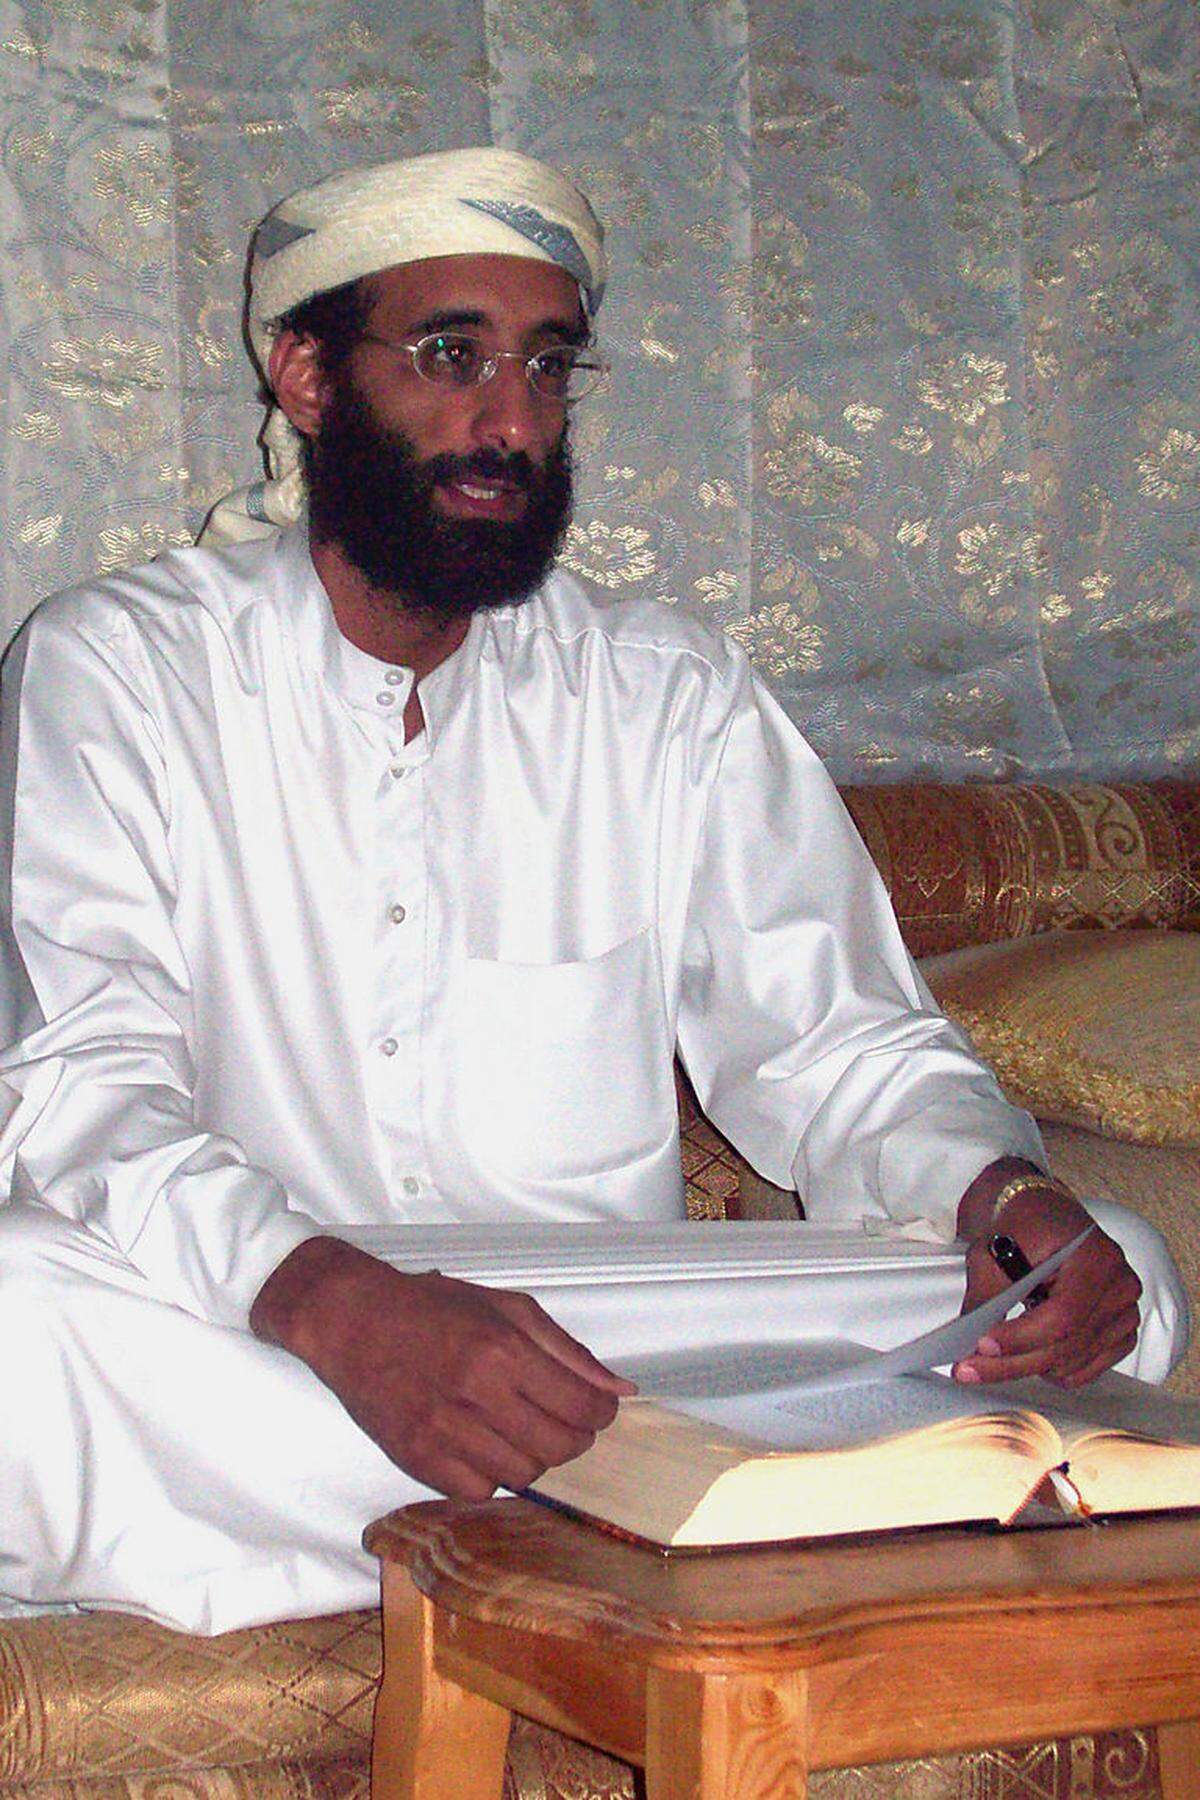 Im September 2011 töteten die USA im Jemen einen anderen hochrangigen al-Qaida-Führer: Anwar al-Awlaki. Der Propagandachef der al-Qaida im Jemen starb bei einem Drohnenangriff. Die Aktion löste in den USA Diskussionen aus, denn al-Awlaki war US-Bürger.